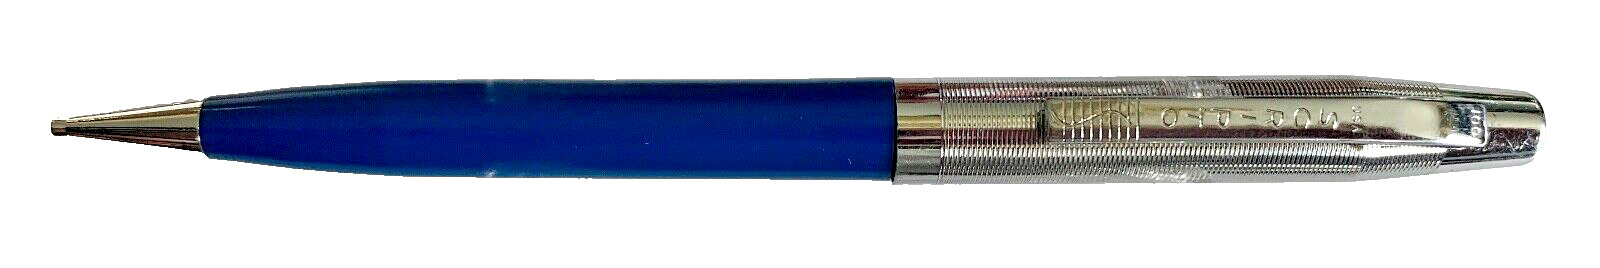 VINTAGE SCRIPTO 100 MECHANICAL PENCIL, BLUE PLASTIC & CHROME TONE, C. 1970'S